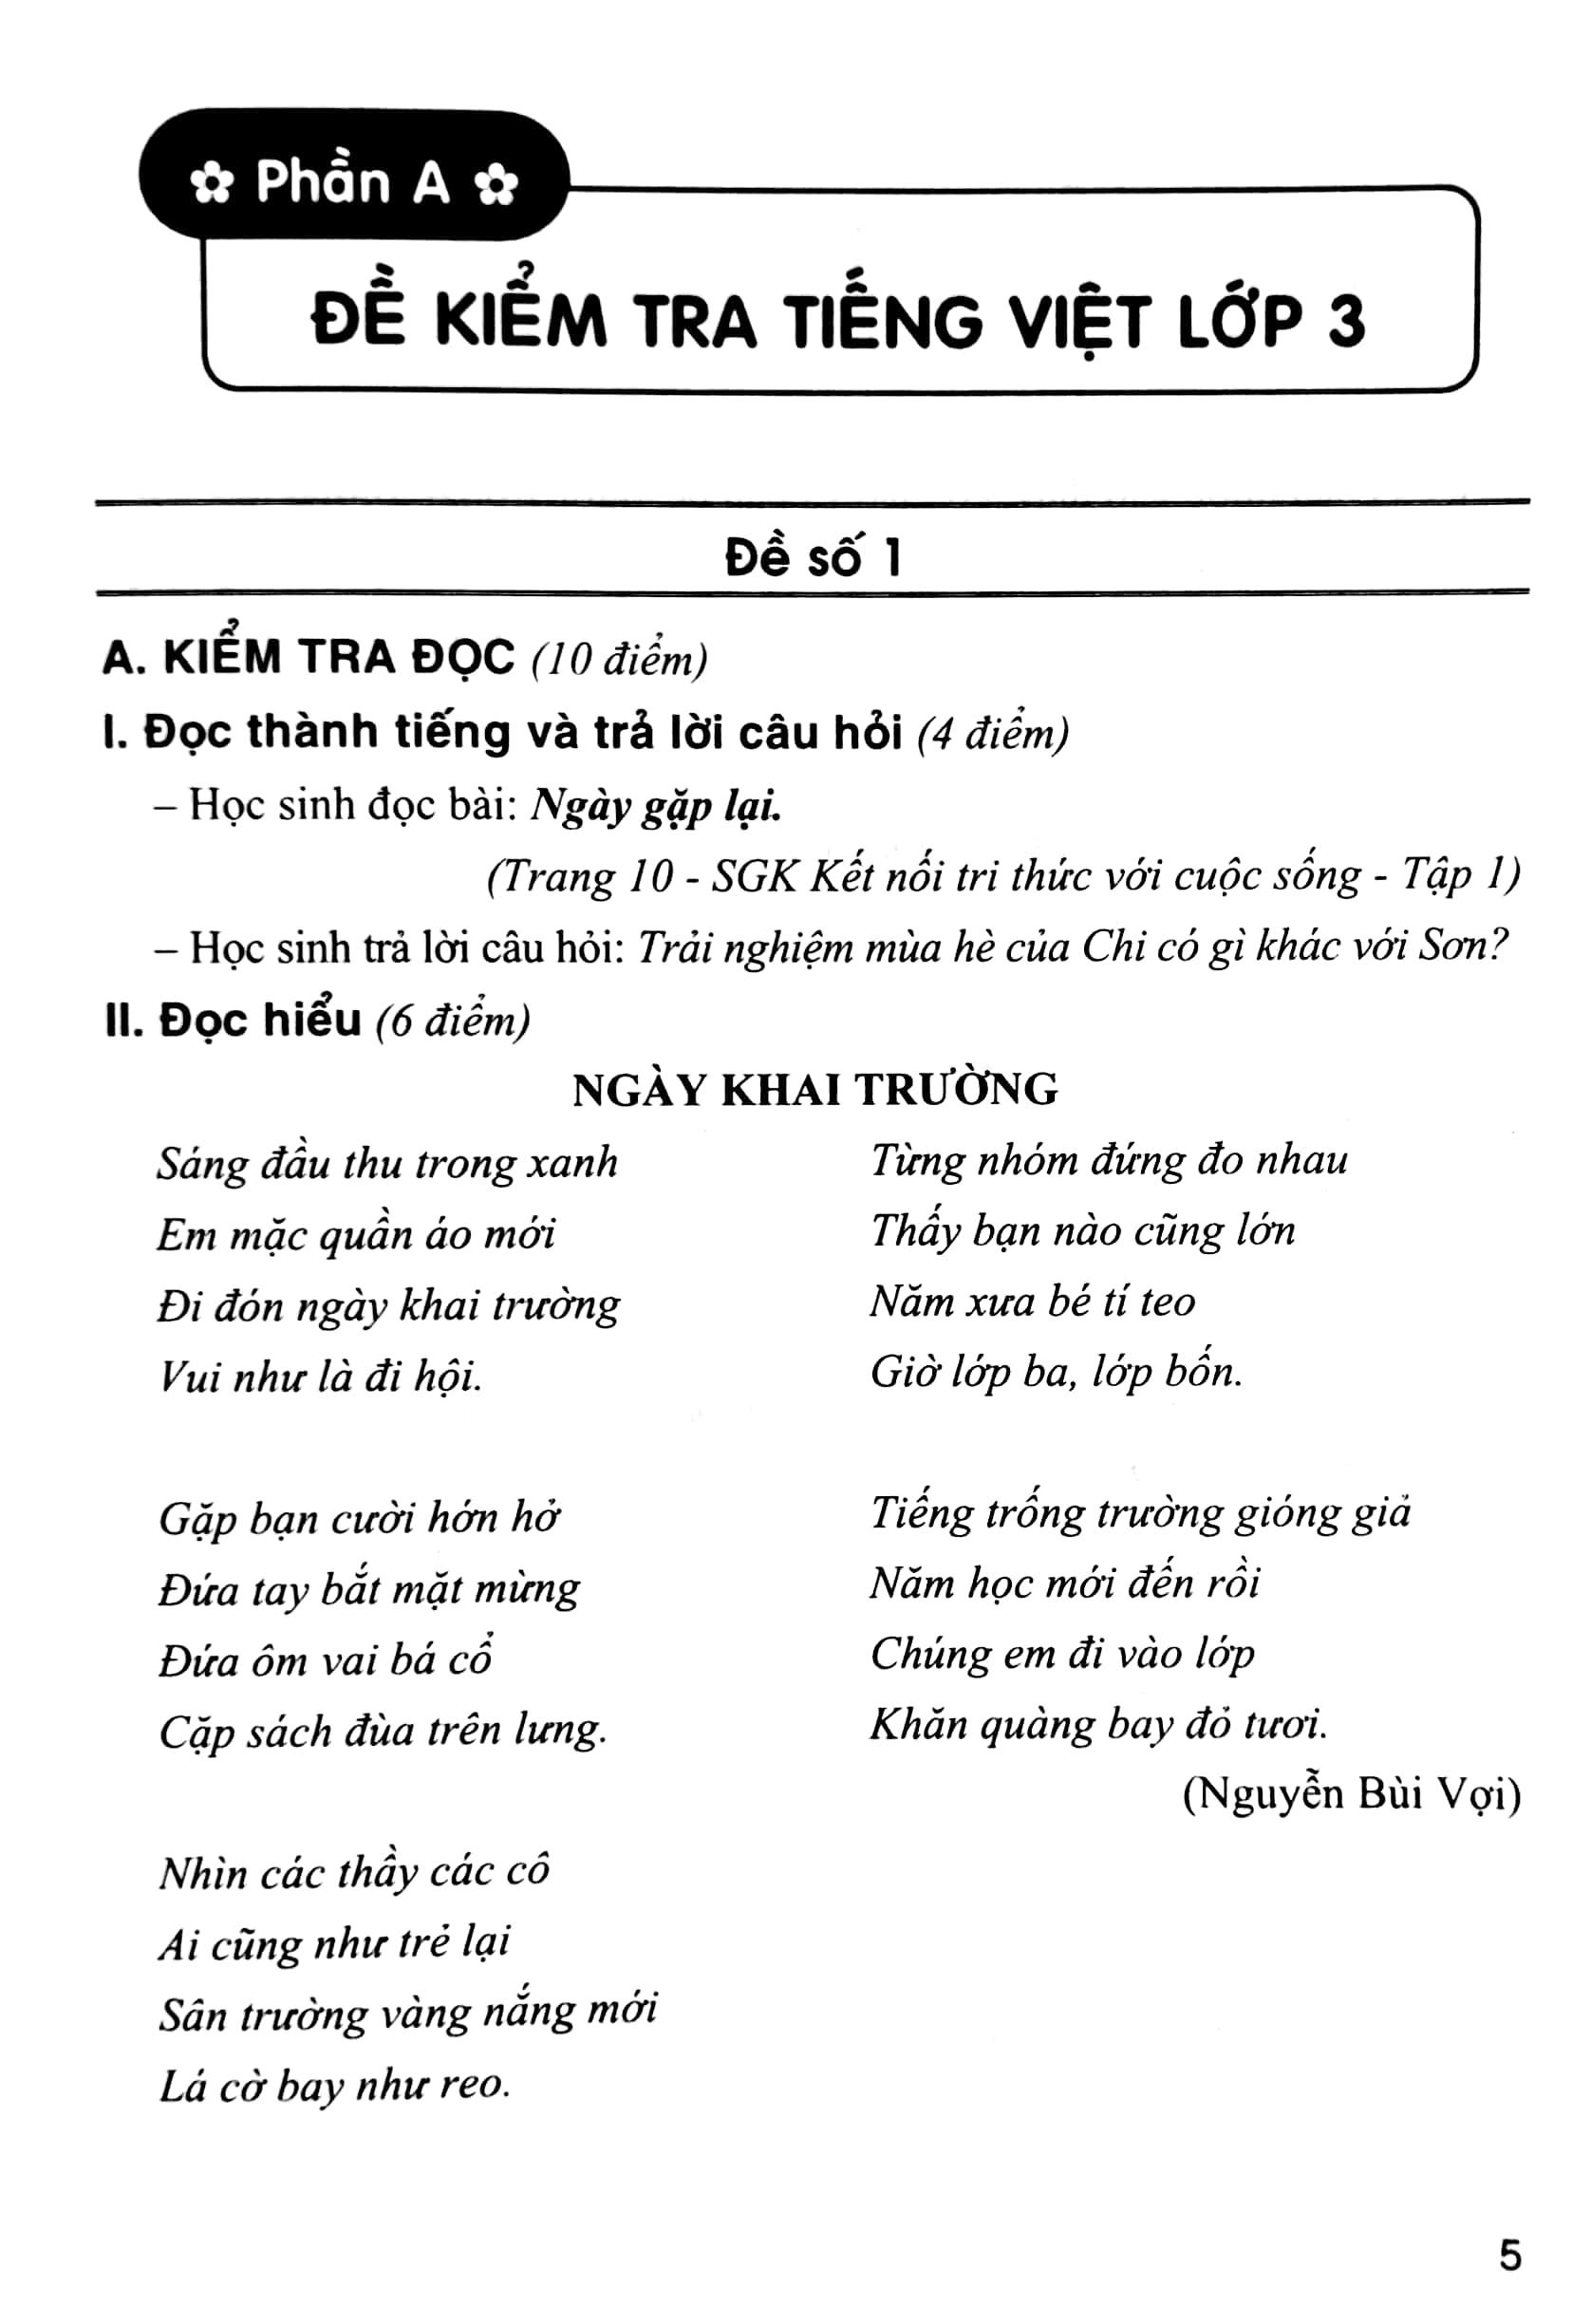 Bộ Đề Kiểm Tra Môn Tiếng Việt Lớp 3 (Theo Chương Trình GDPT Mới) (Dùng Kèm SGK Kết Nối Tri Thức Với Cuộc Sống)